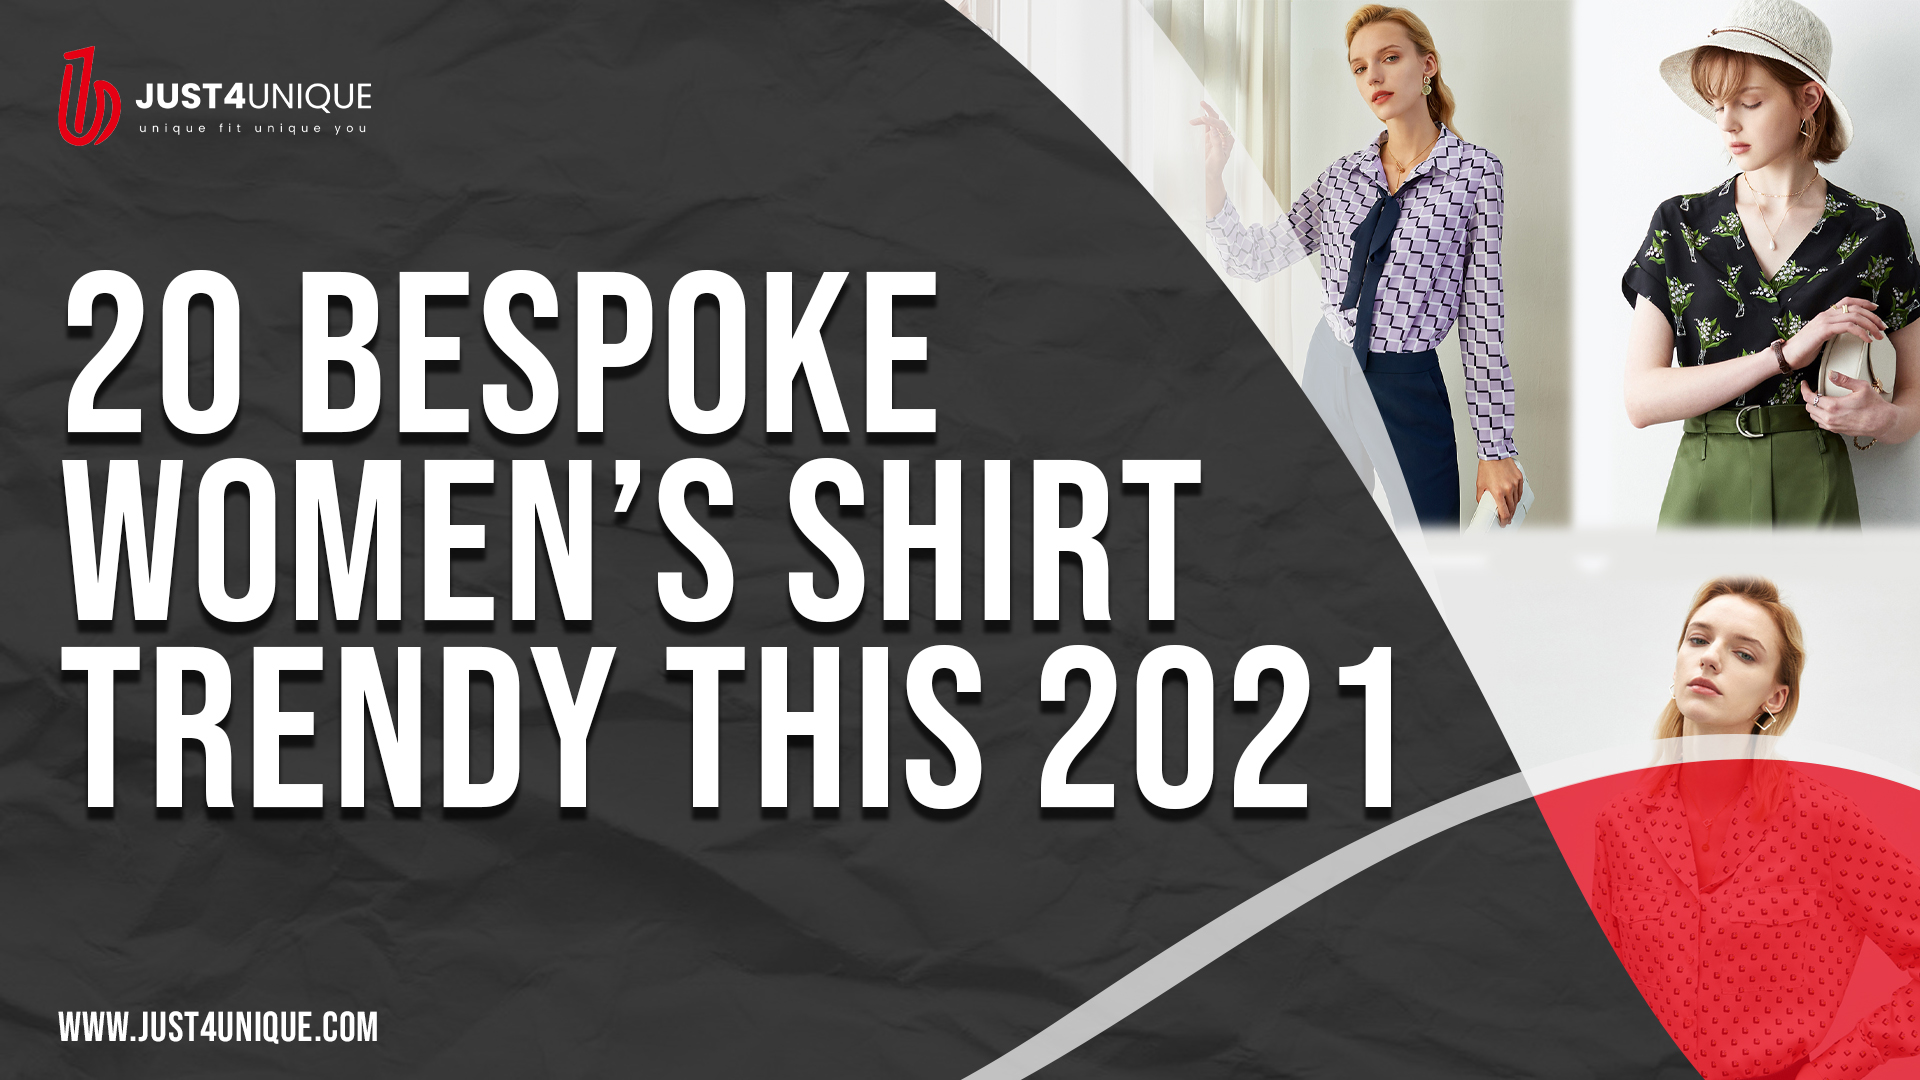 20 Bespoke Women’s Shirt Trendy this 2021